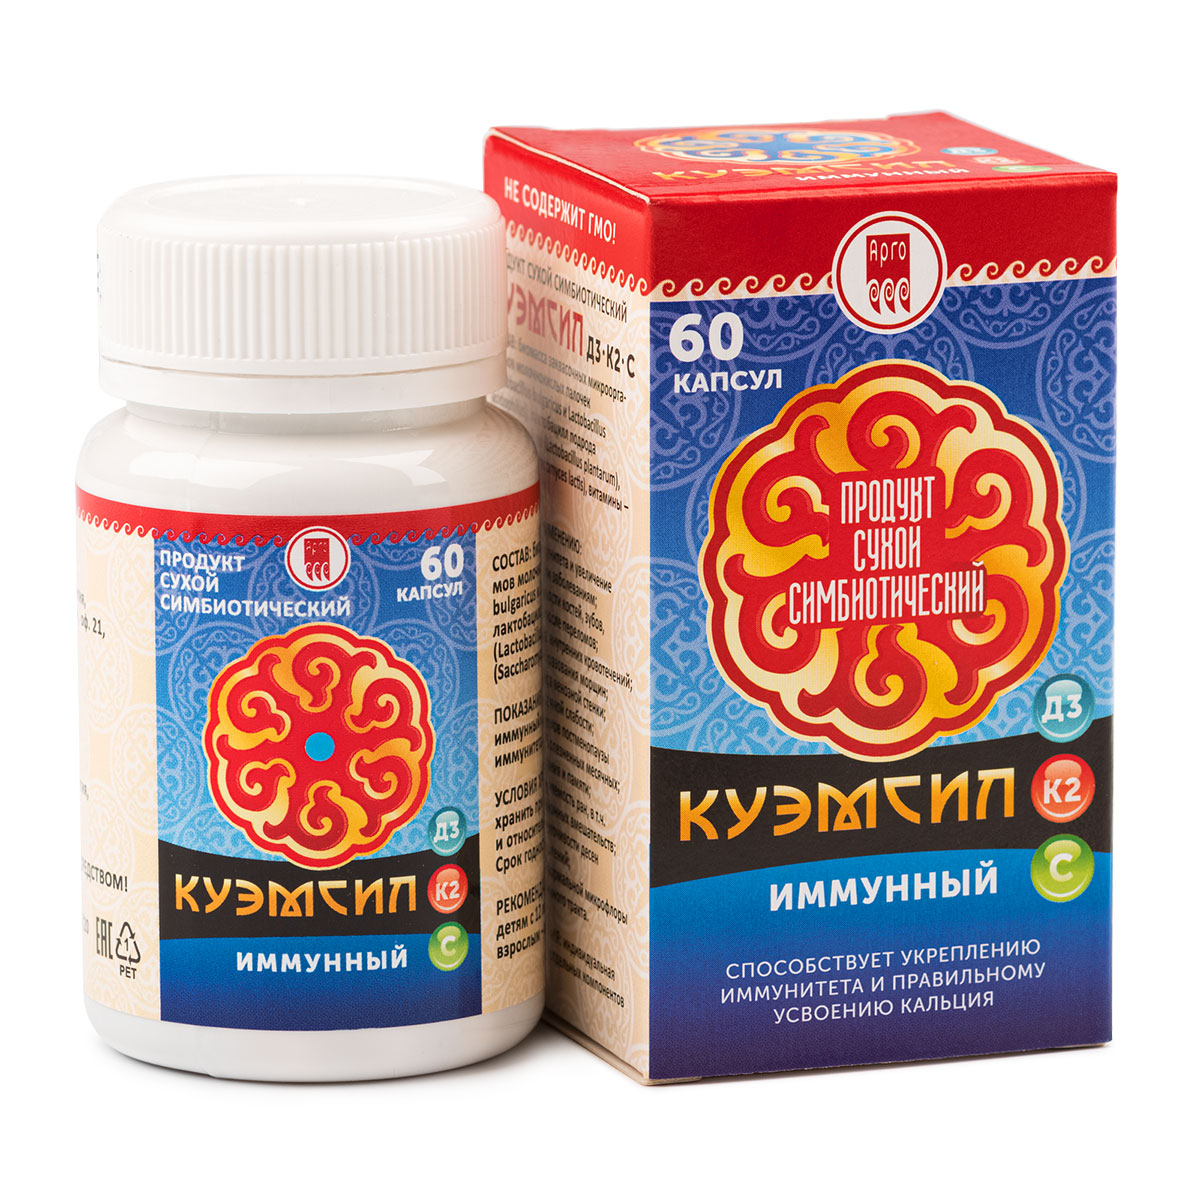 Продукт симбиотический «КуЭМсил D3, K2 иммунный», капсулы, 60 шт